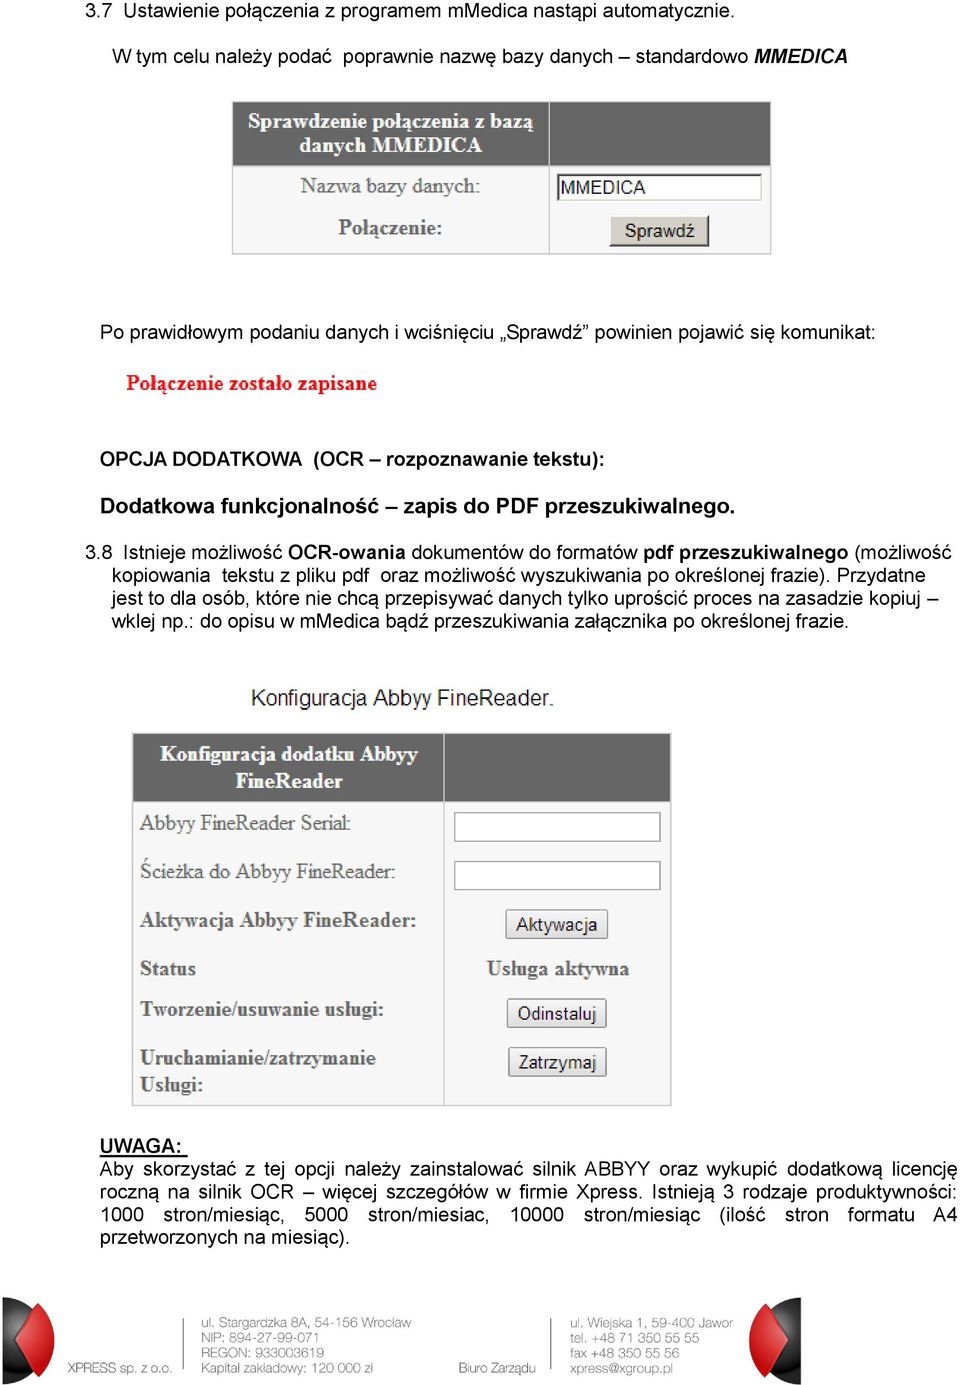 Dodatkowa funkcjonalność zapis do PDF przeszukiwalnego. 3.